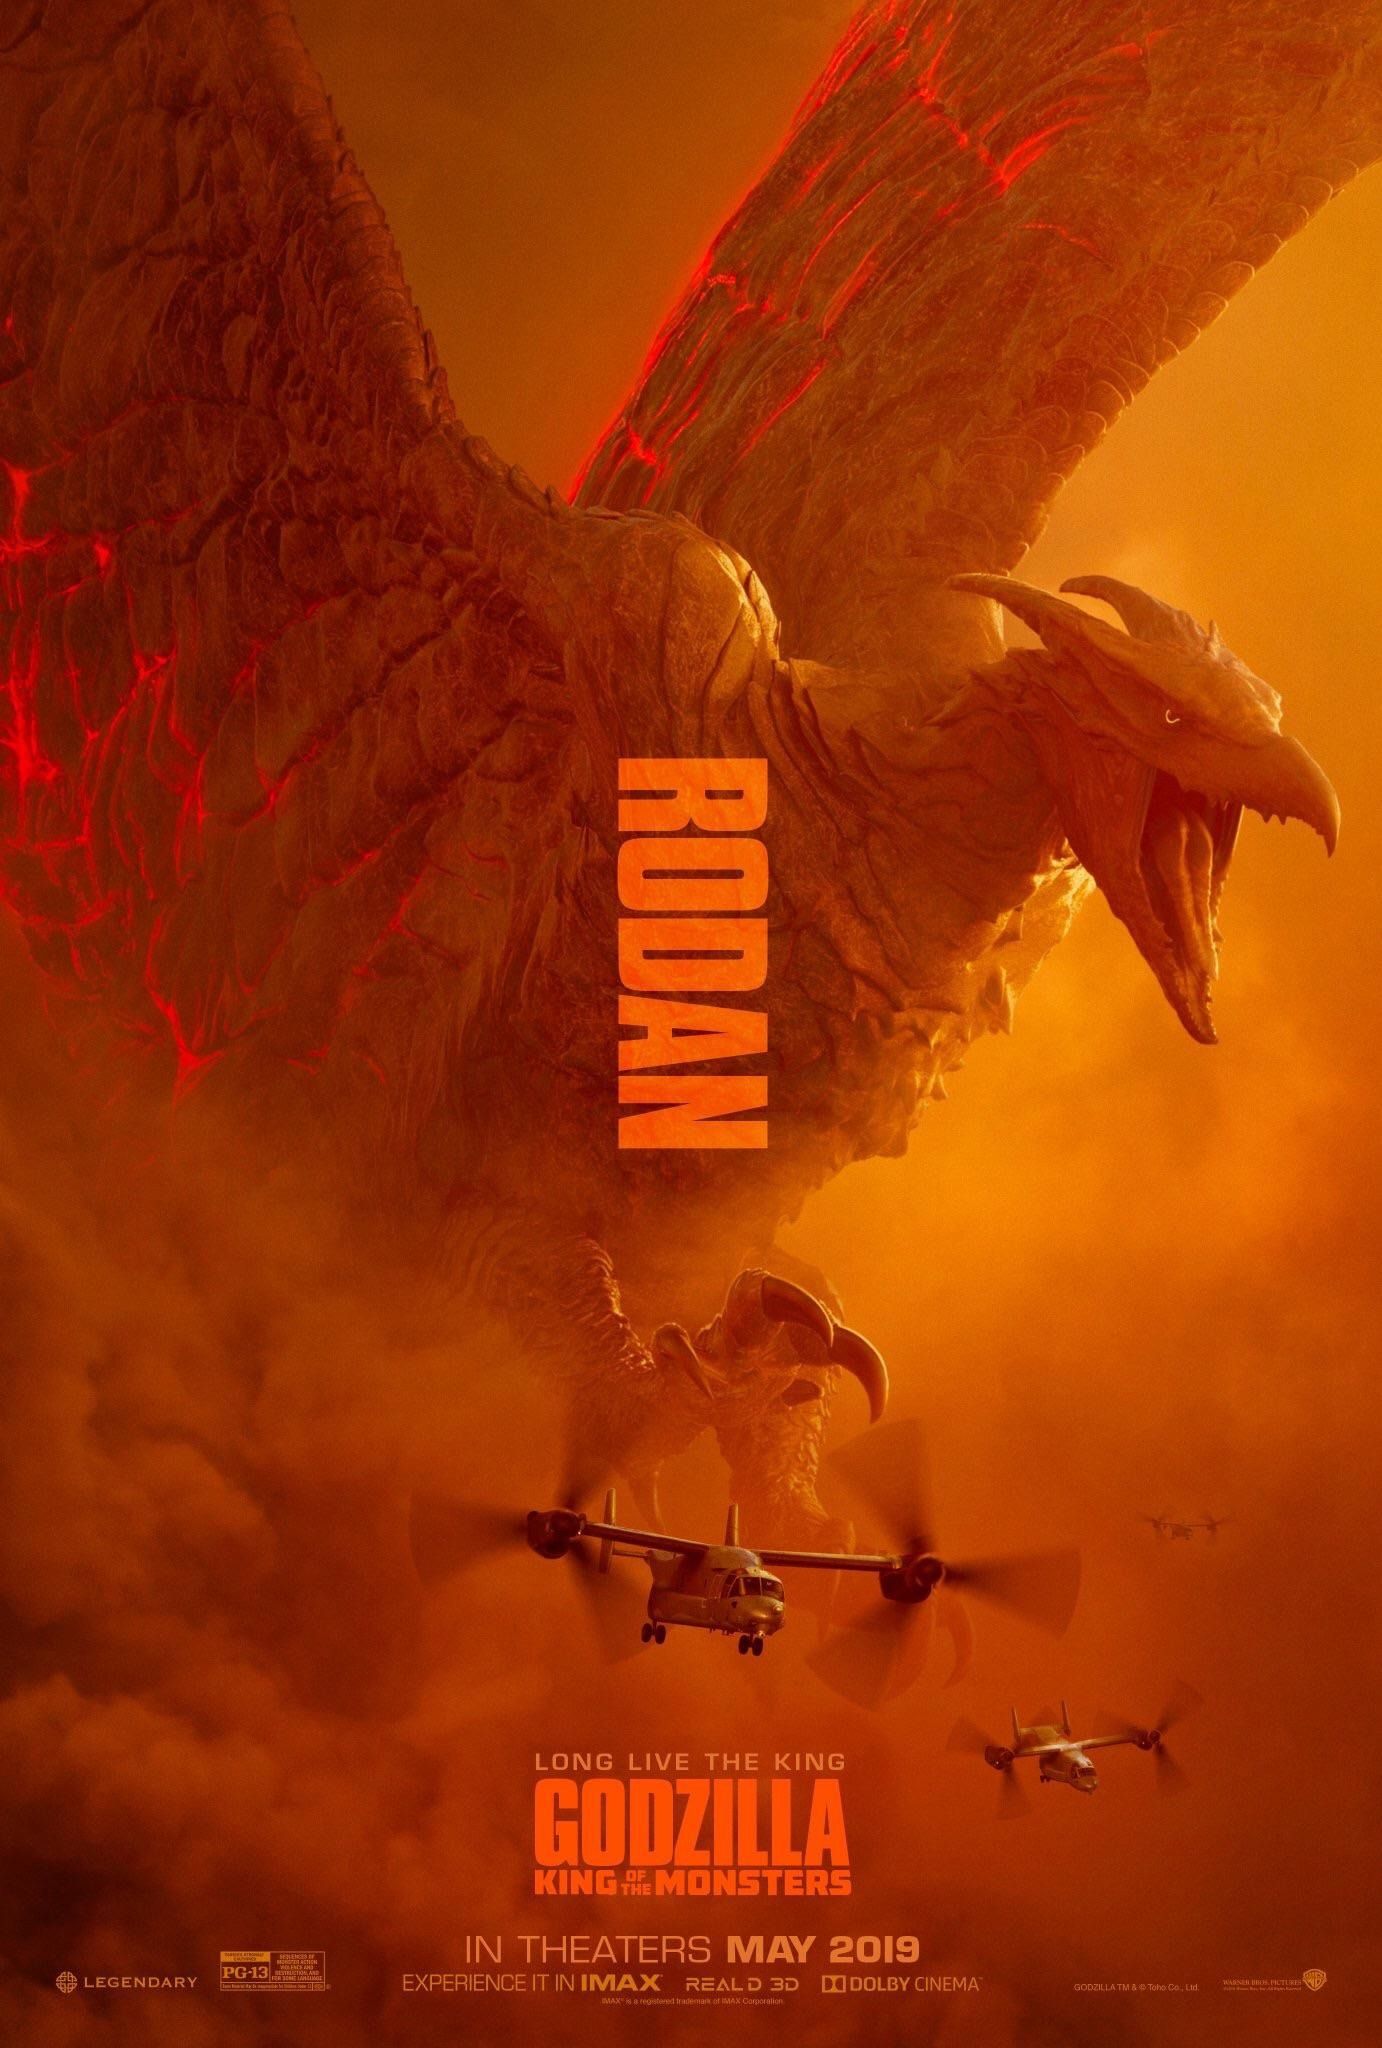 Godzilla 2 character posters #1